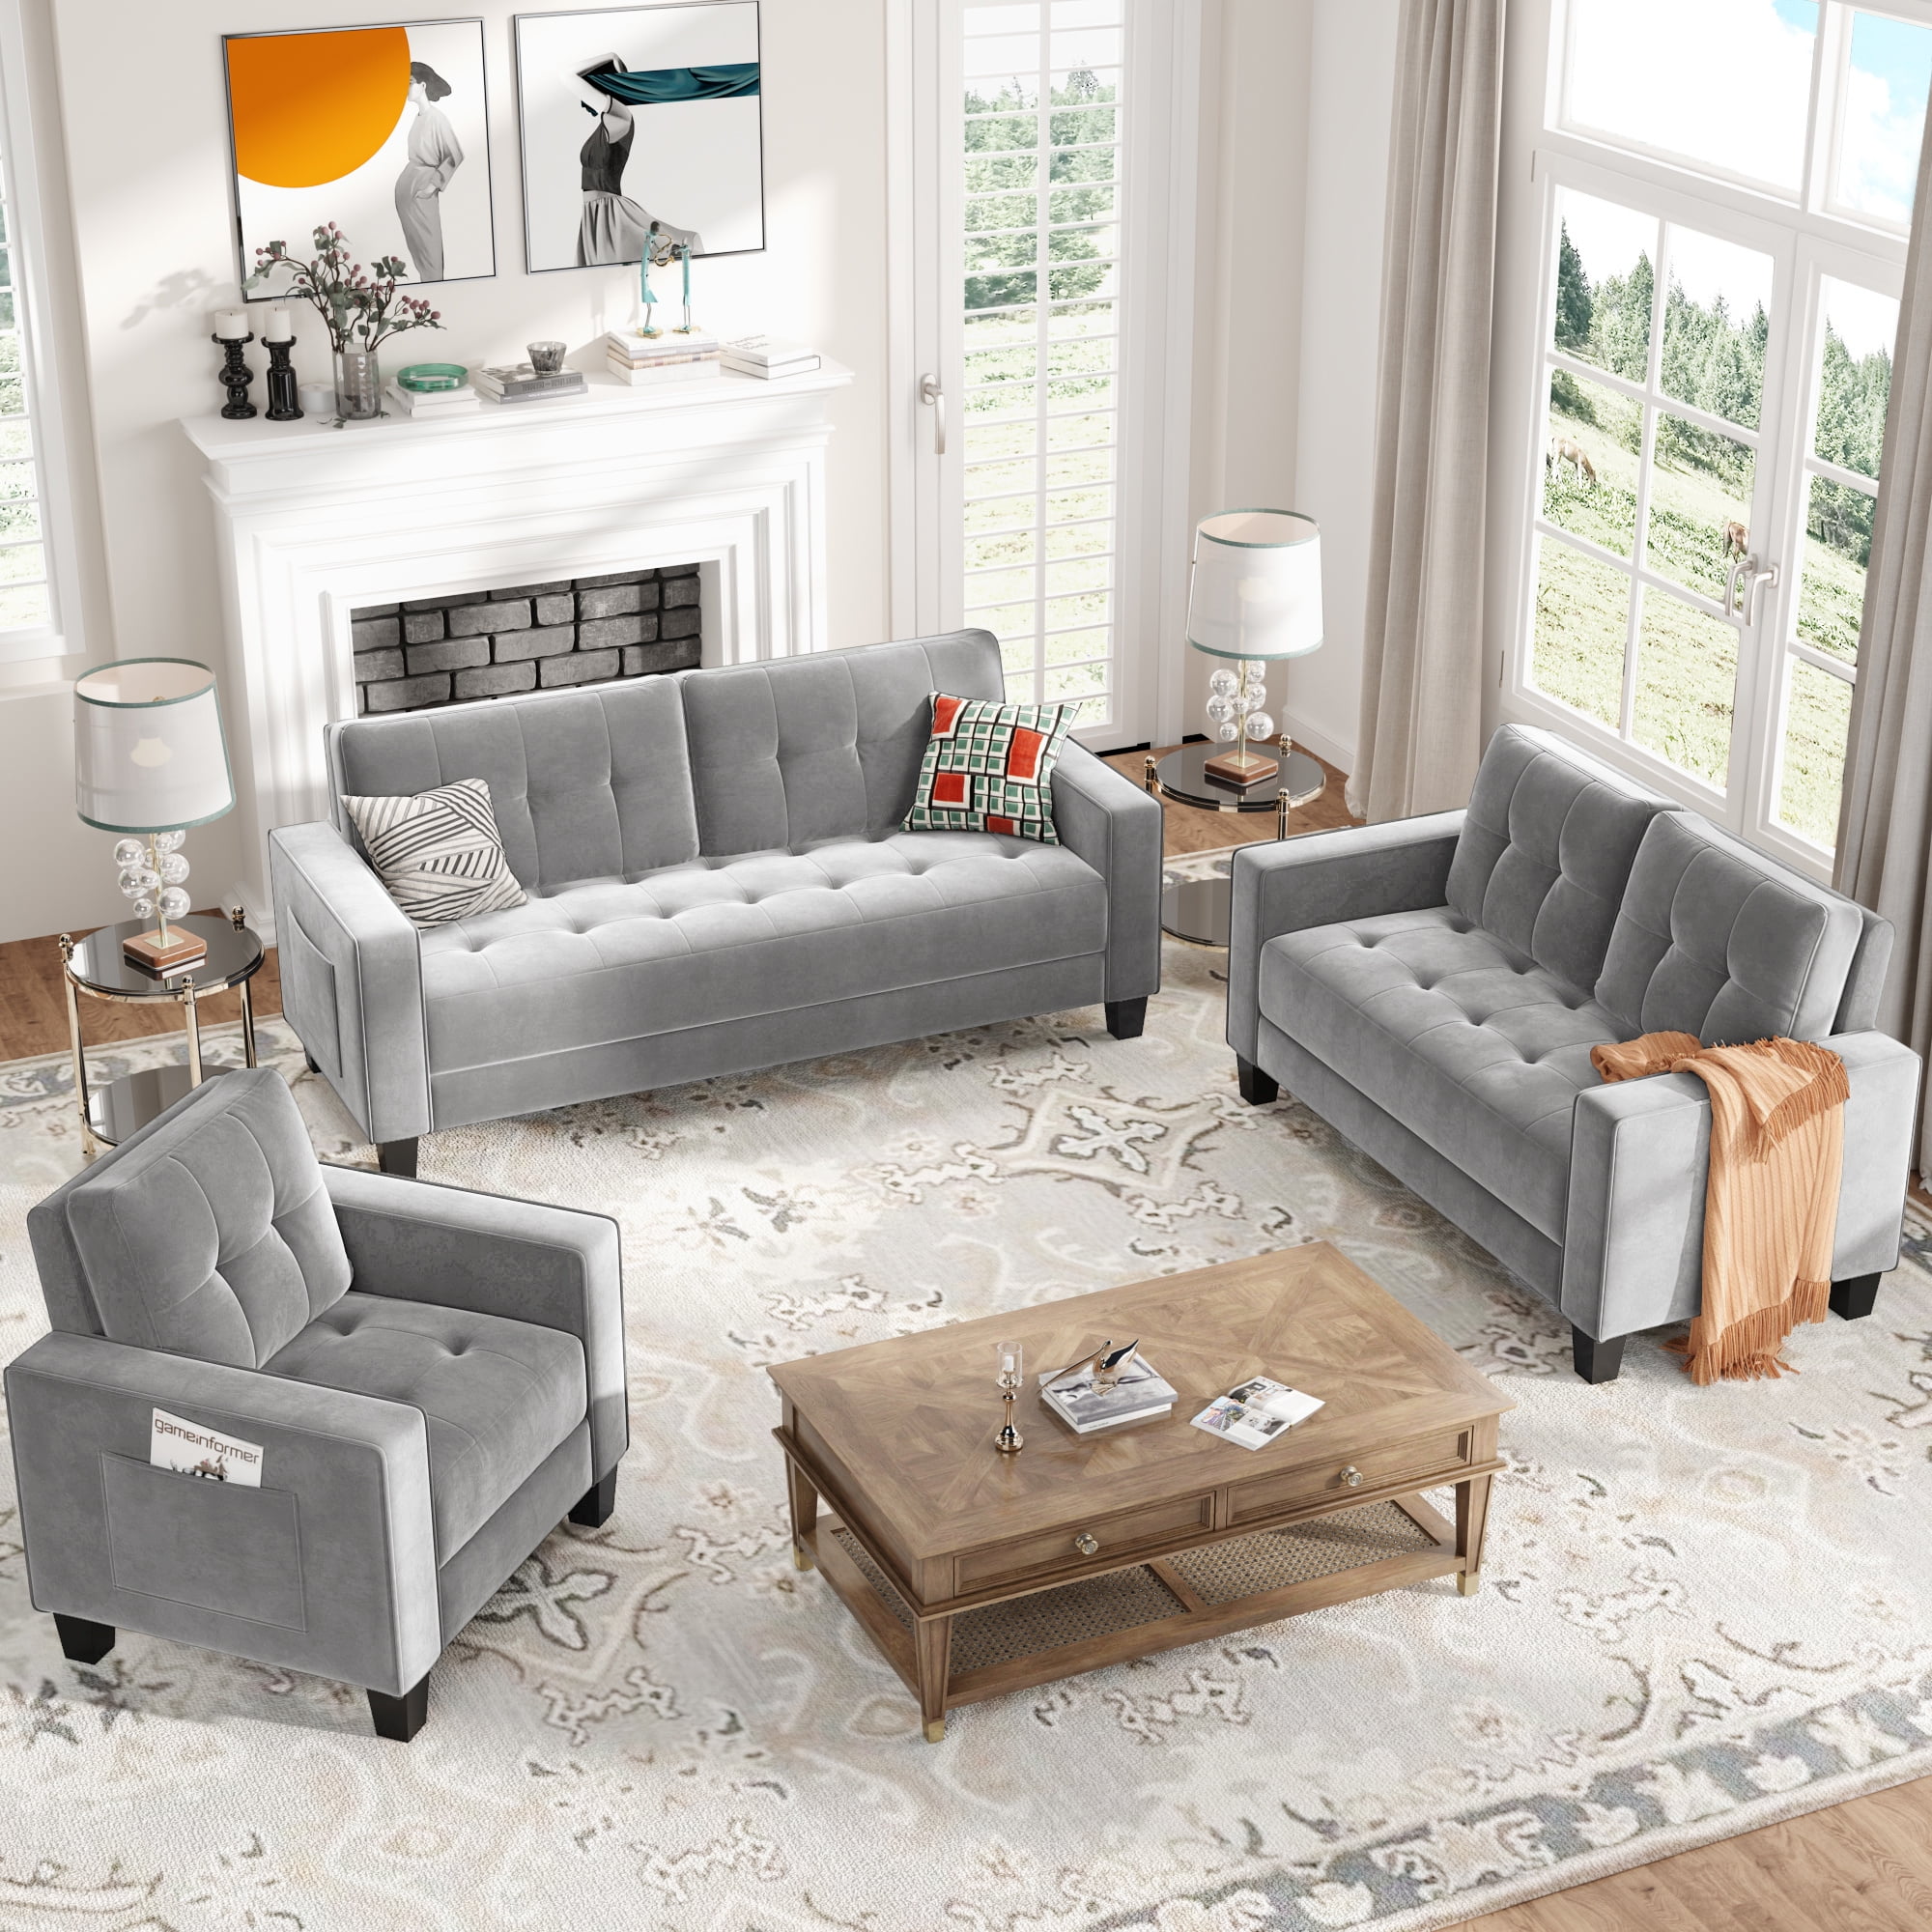 3 Piece Living Room Furniture Sets